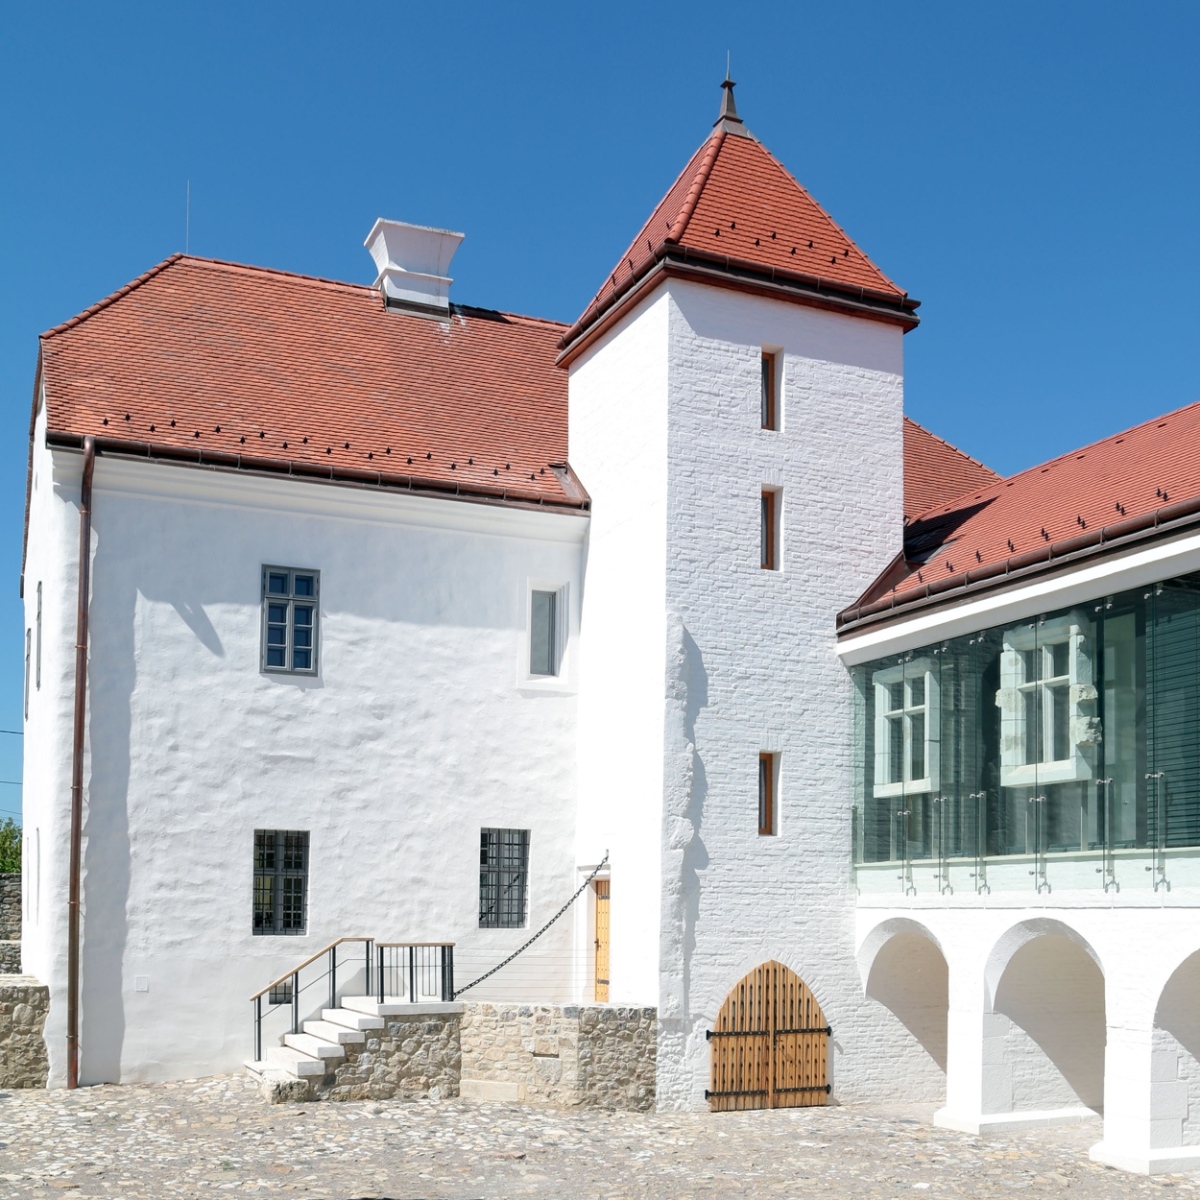 A korábban szinte ismeretlen középkori vár felújítása Szászváron Albert János, dr. Szabó Éva és Mersits Ildikó tervei alapján az elmúlt évek fontos, a hagyományos iskolát folytató műemléki beruházásai közé tartozik.